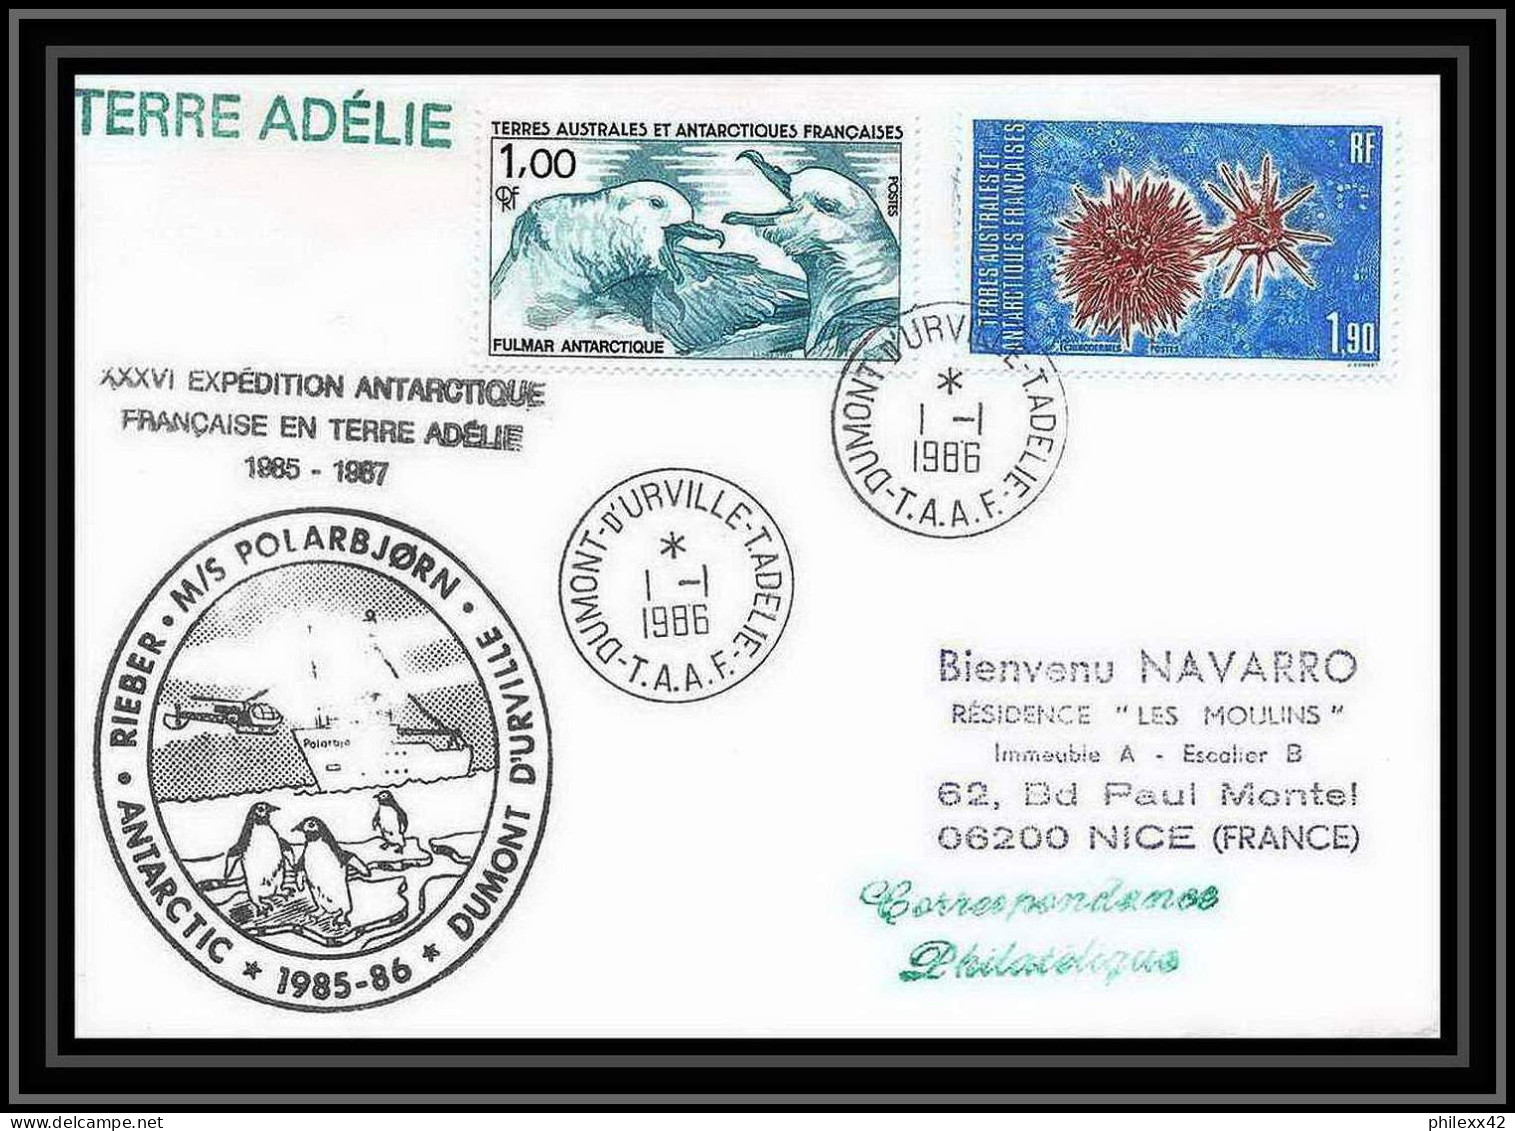 1530 36 ème Expédition En Terre Adélie Polarbjorn 1/1/1986 TAAF Antarctic Terres Australes Lettre (cover) - Antarktis-Expeditionen